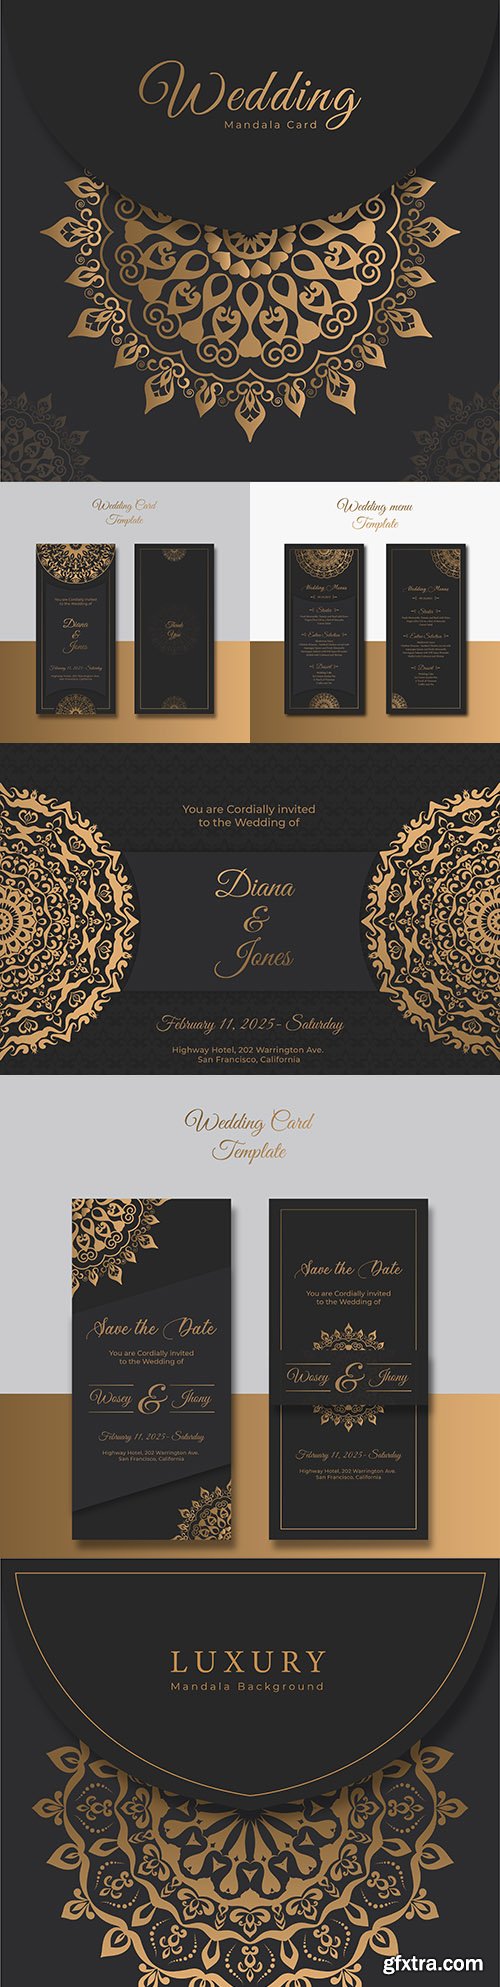 Elegant wedding invitation luxury template mandala
